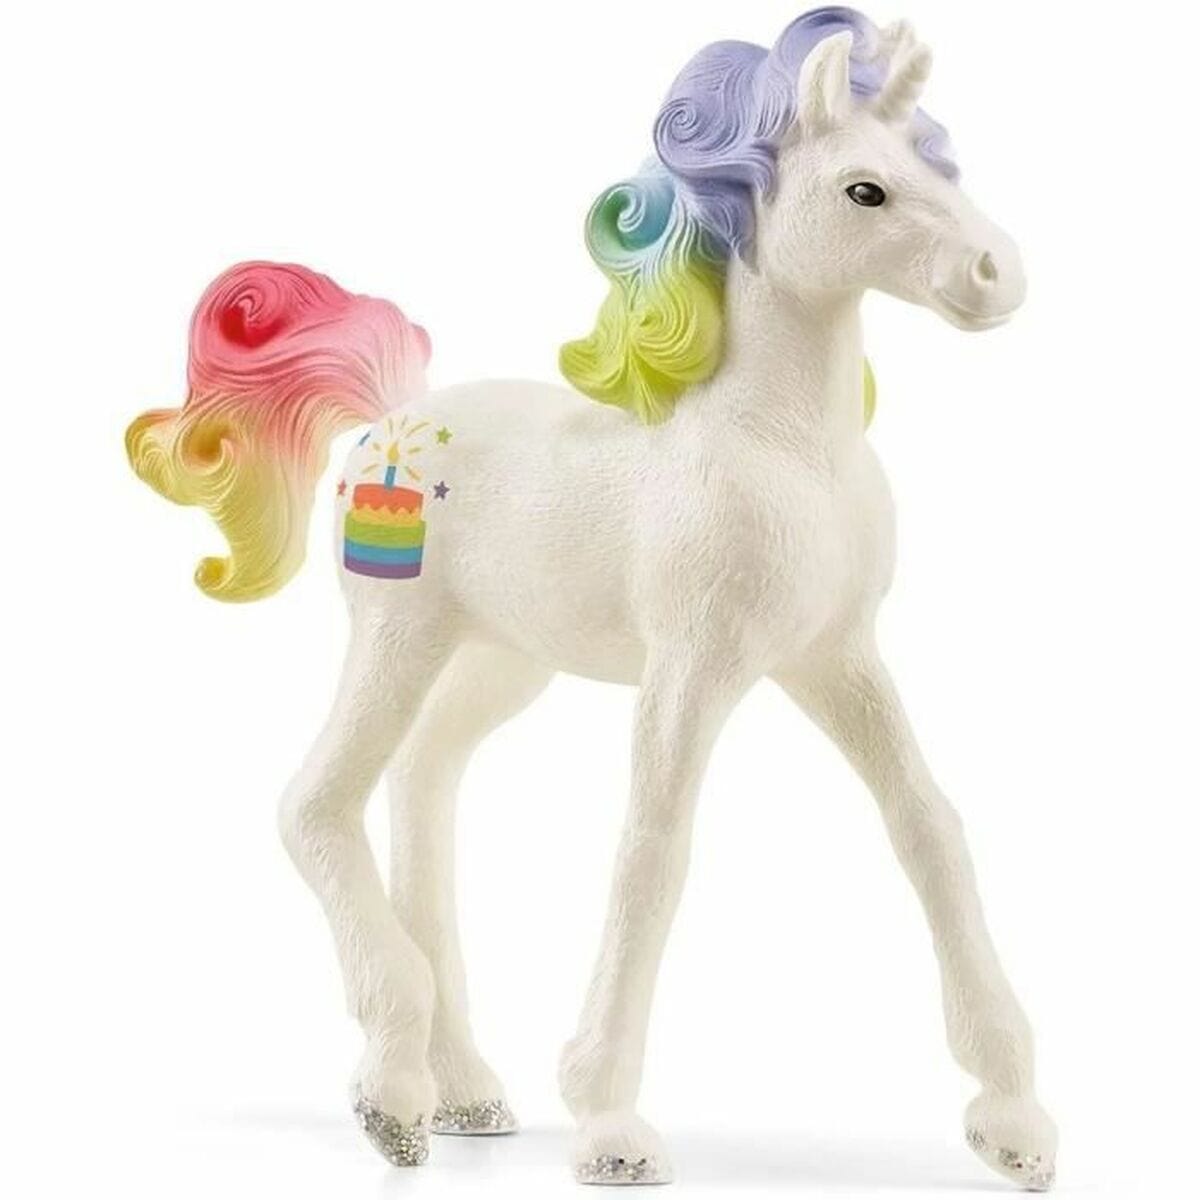 Schleich Spielzeug | Kostüme > Spielzeug und Spiele > Puppen und Plüschtiere Einhorn Schleich Collectible Unicorn Rainbow Cake